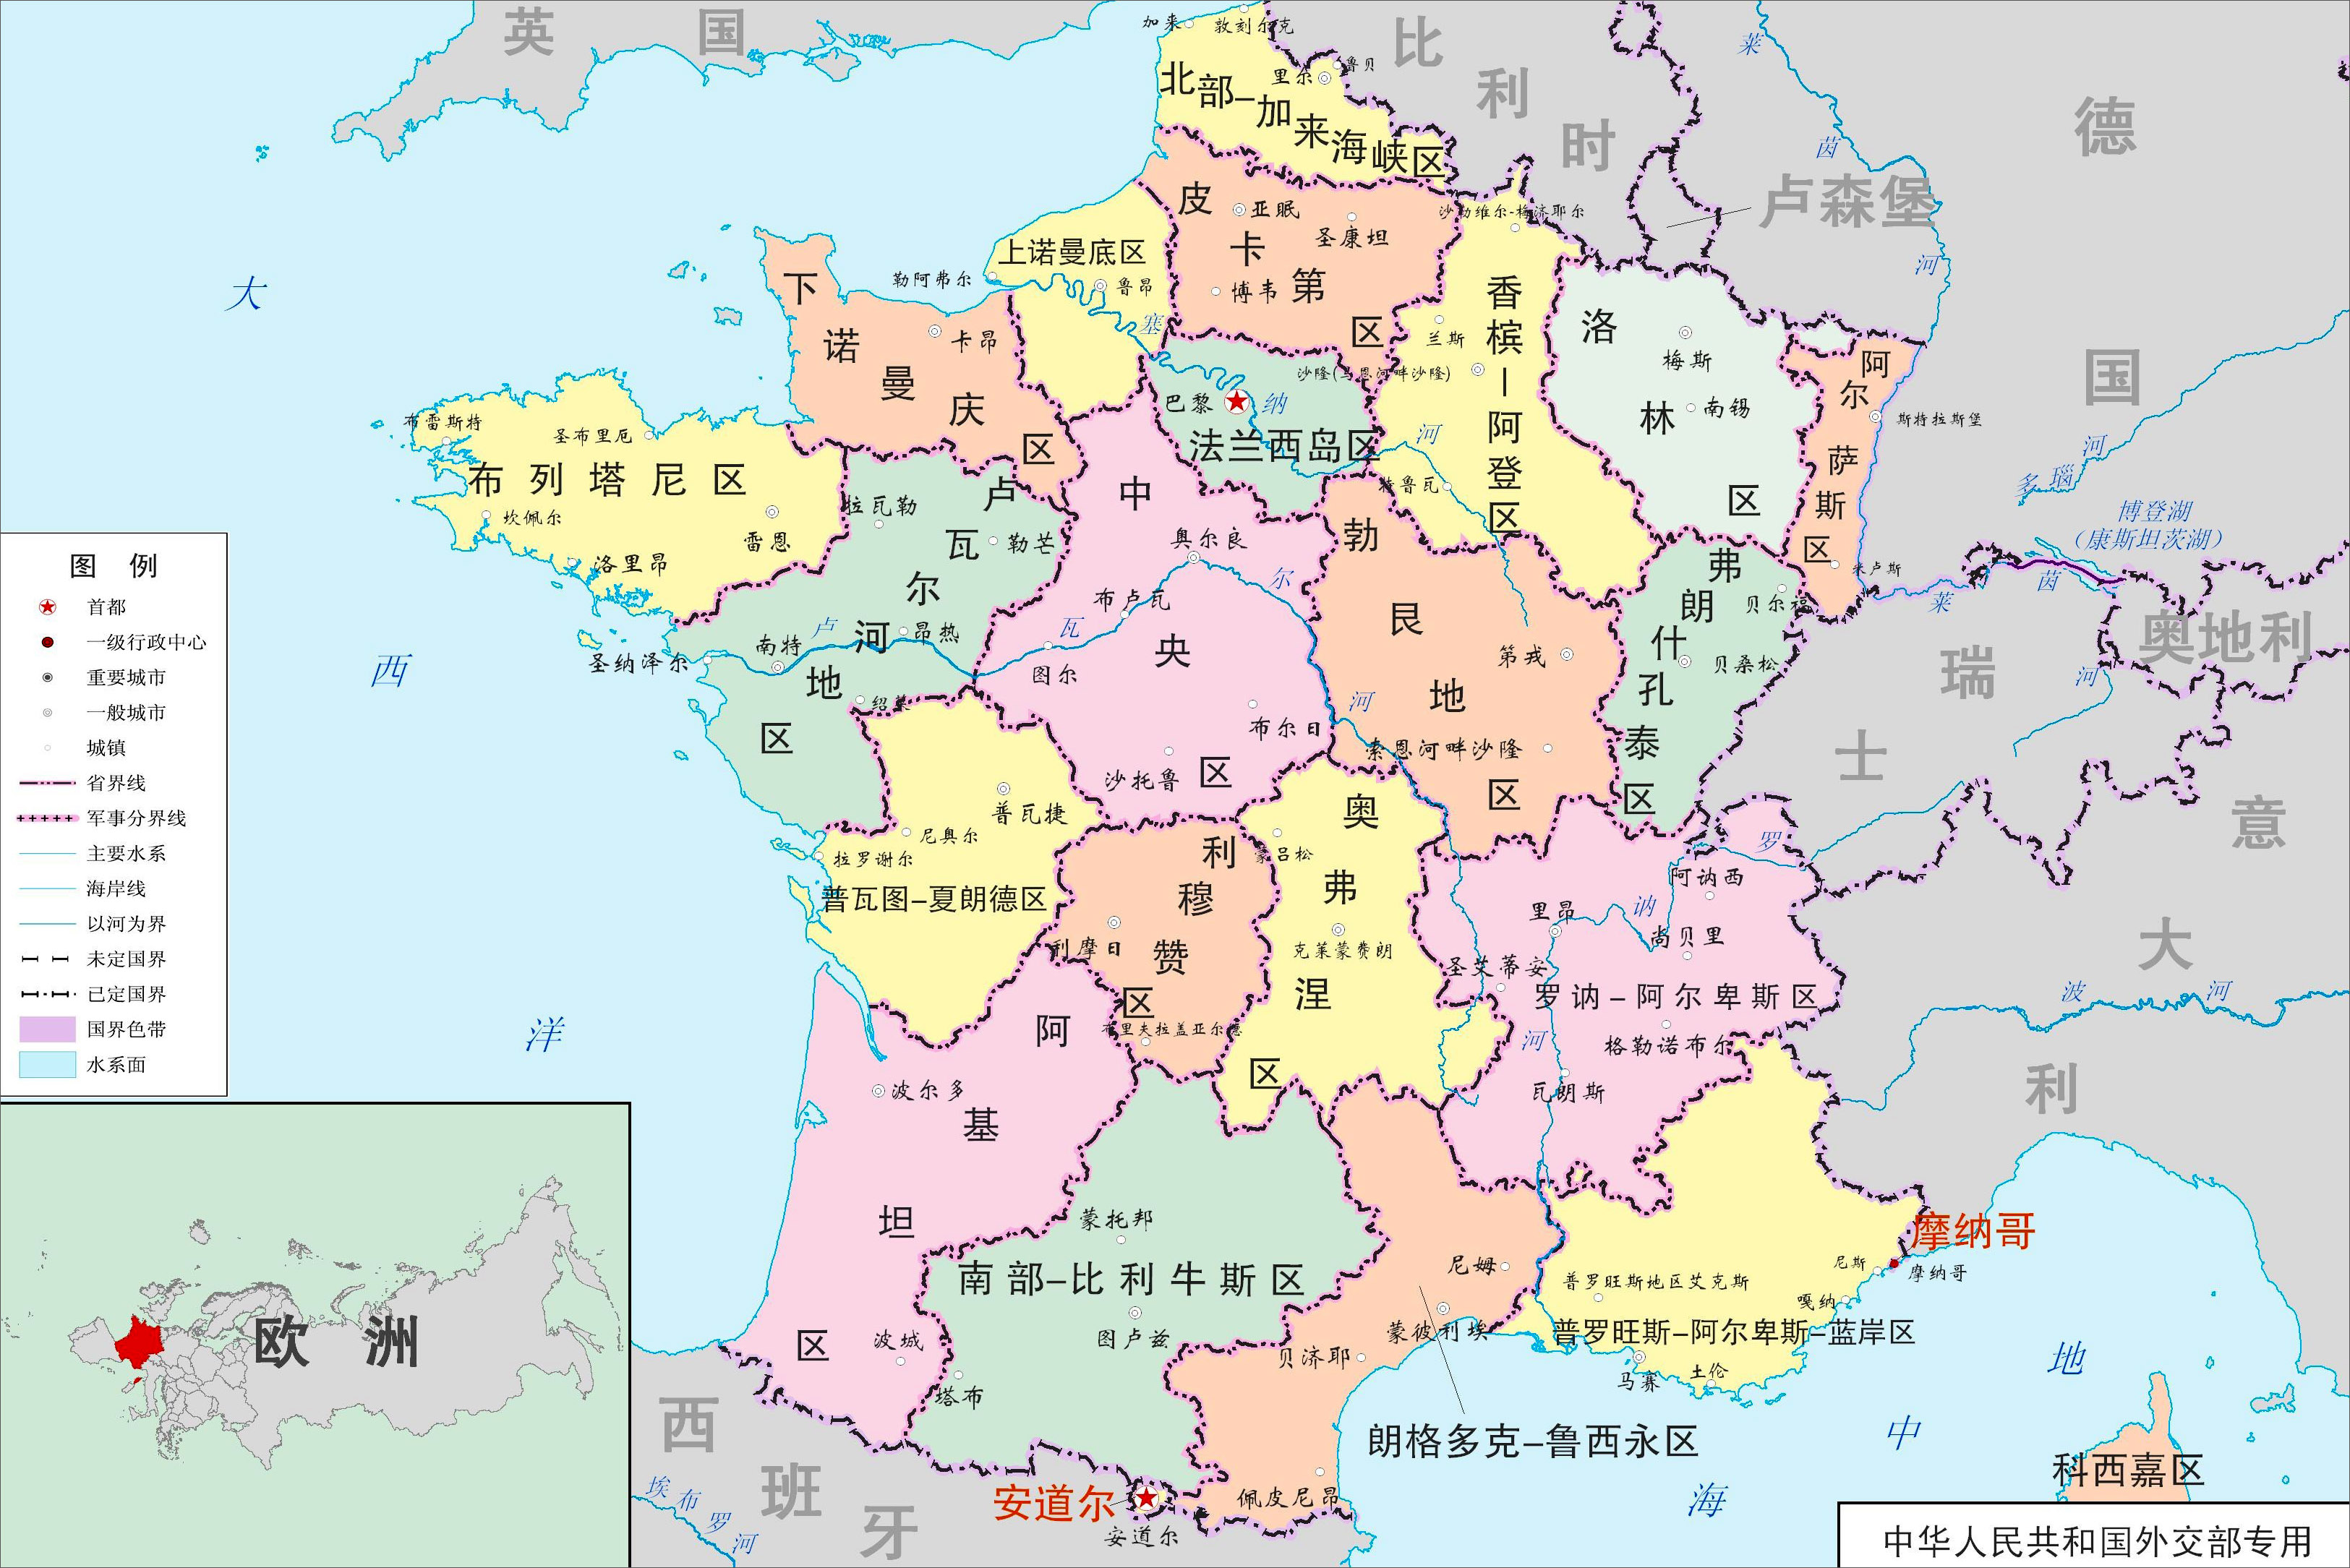 世界地图 欧洲 摩纳哥 >> 摩纳哥行政区域图 分类: 摩纳哥 世界行政